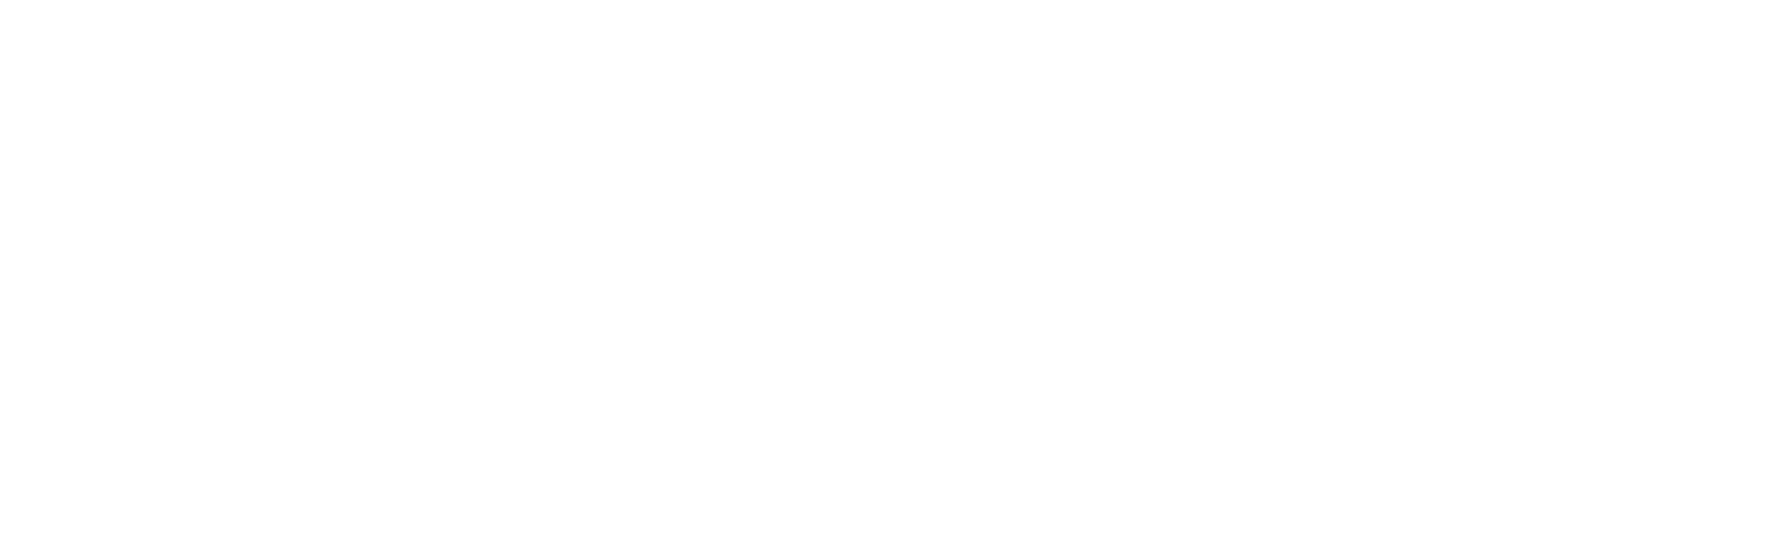 FirstNet Authority White Logo